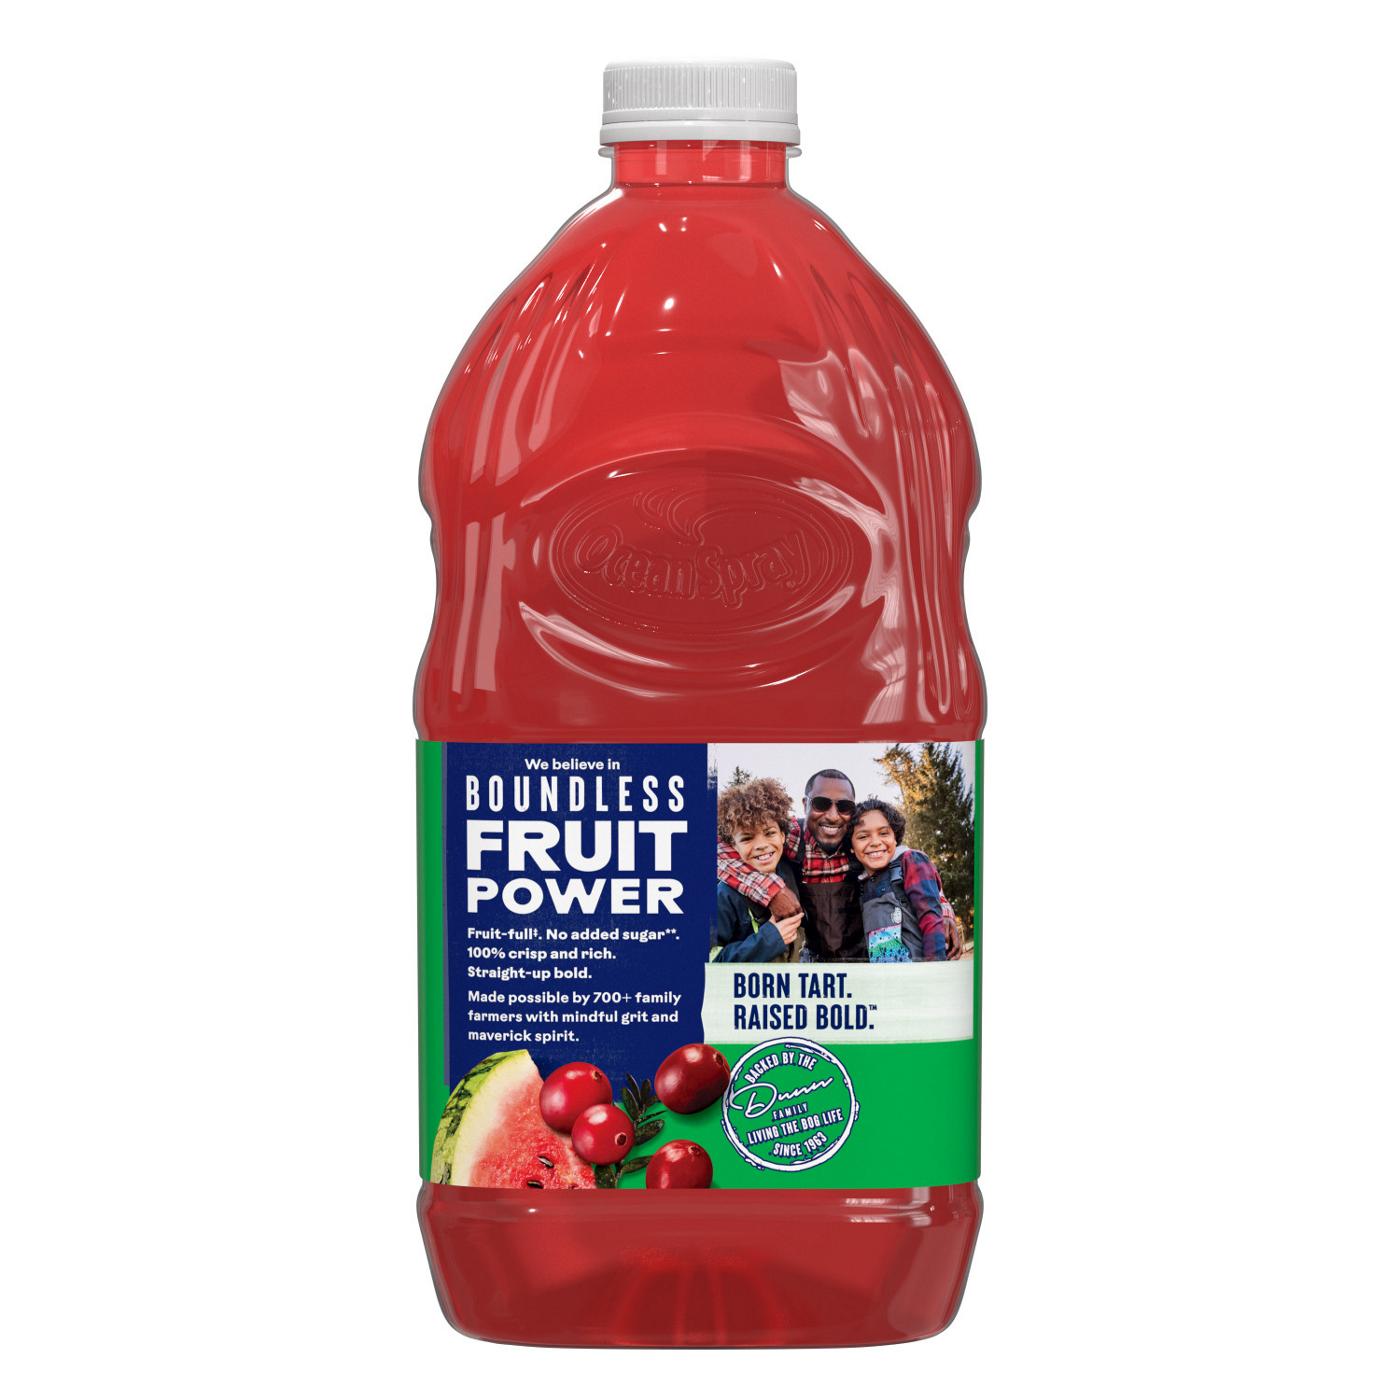 Ocean Spray No Sugar Added 100% Juice Cranberry Watermelon Juice Drink; image 5 of 6